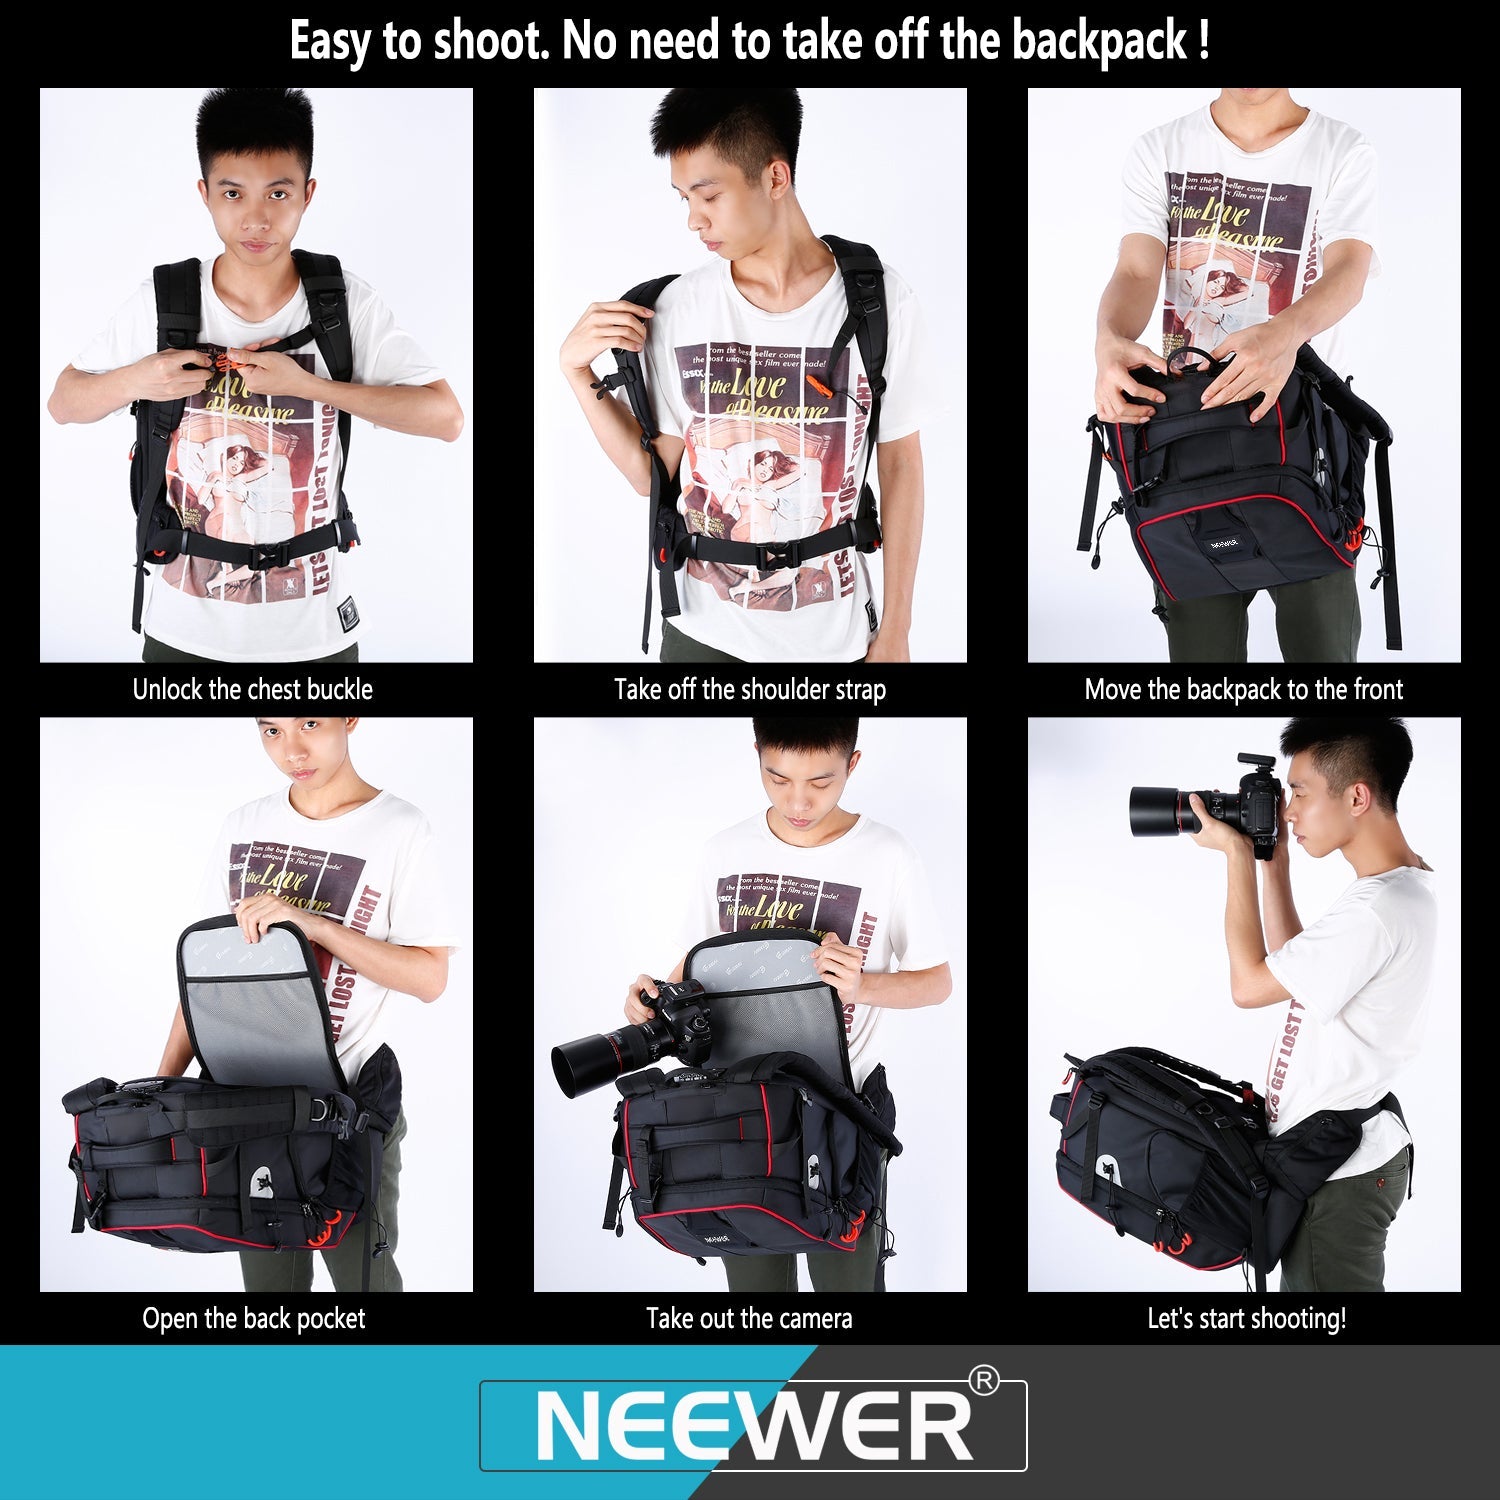 Neewer Pro Waterproof Shockproof Adjustable Padded Camera Backpack Bag